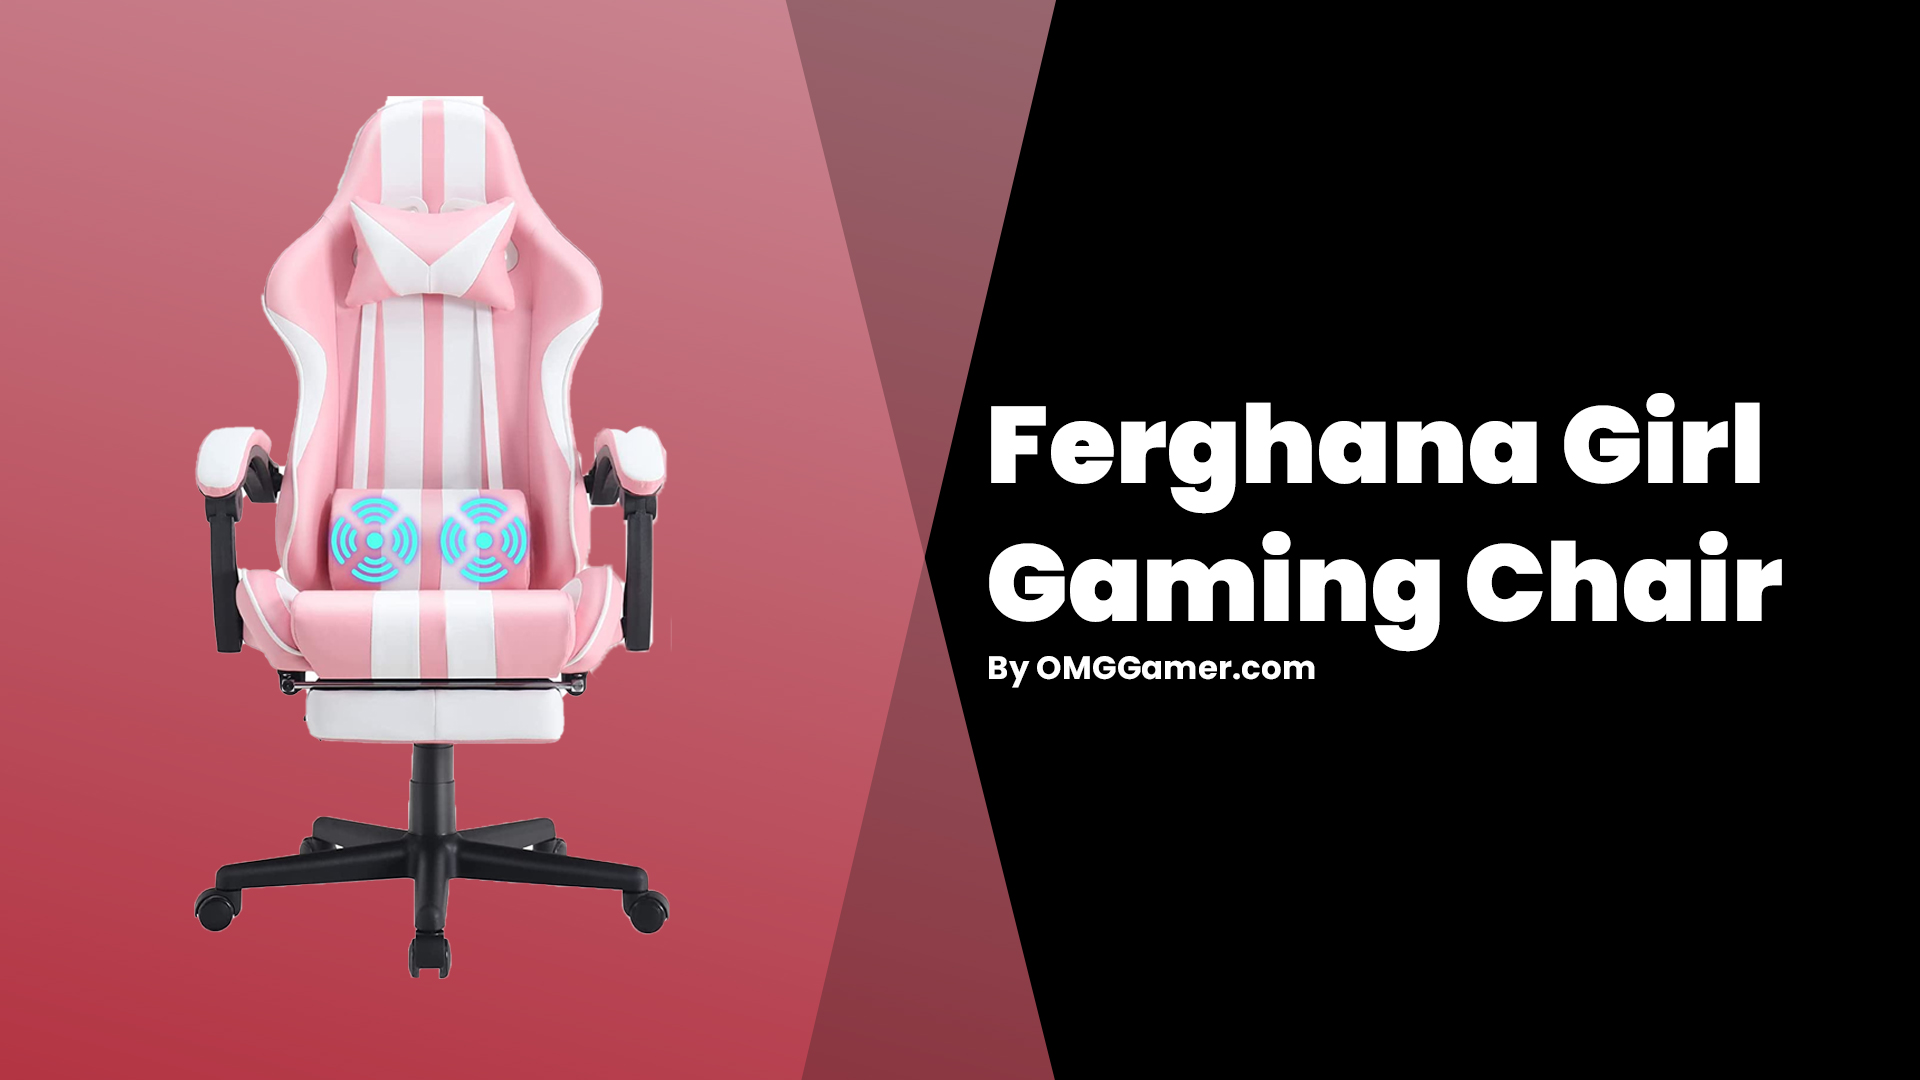 Ferghana Girl Gaming Chair